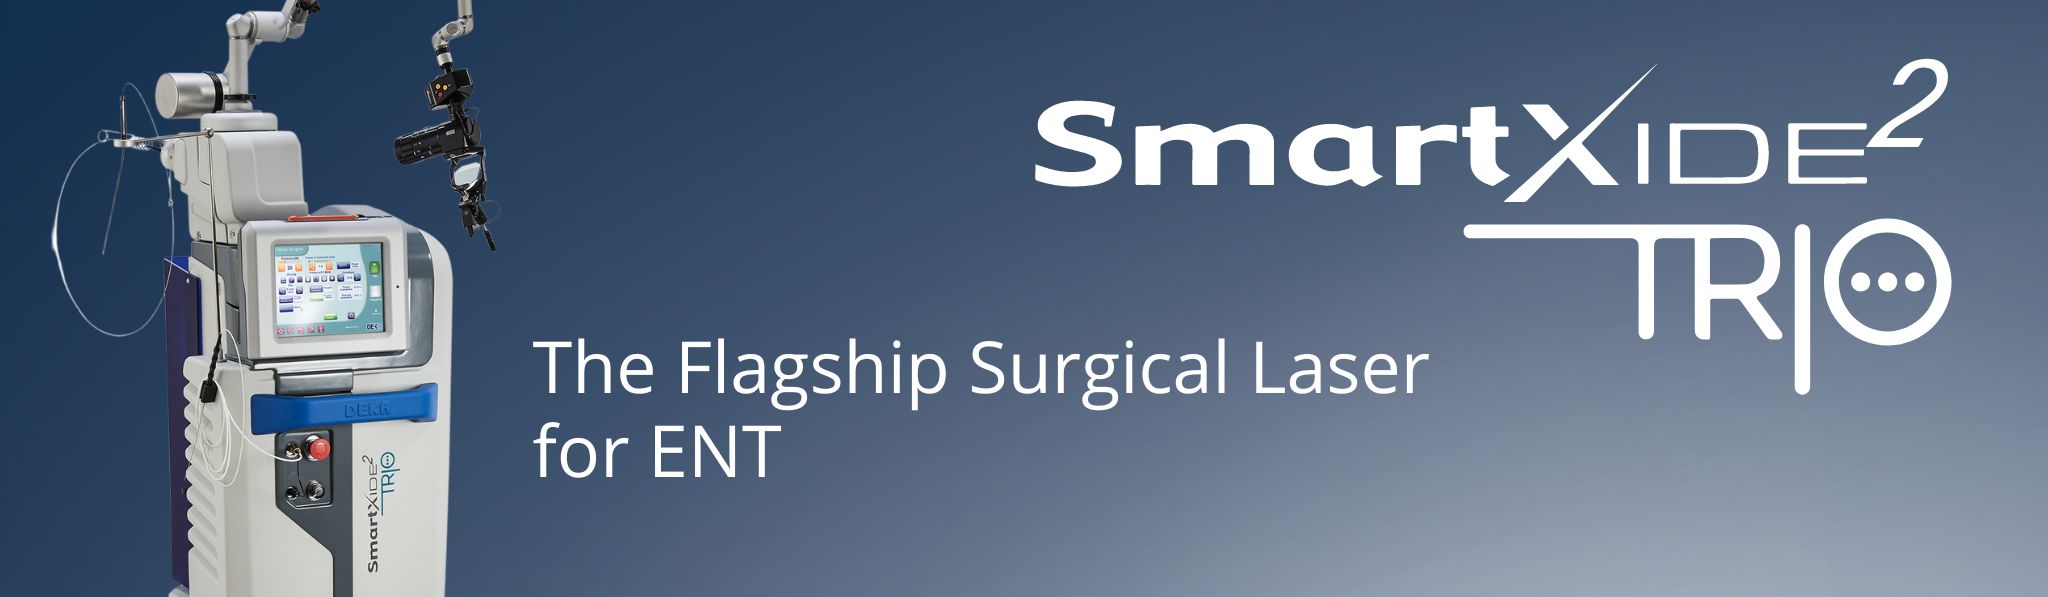 Surgical CO2 Laser SmartXide Trio